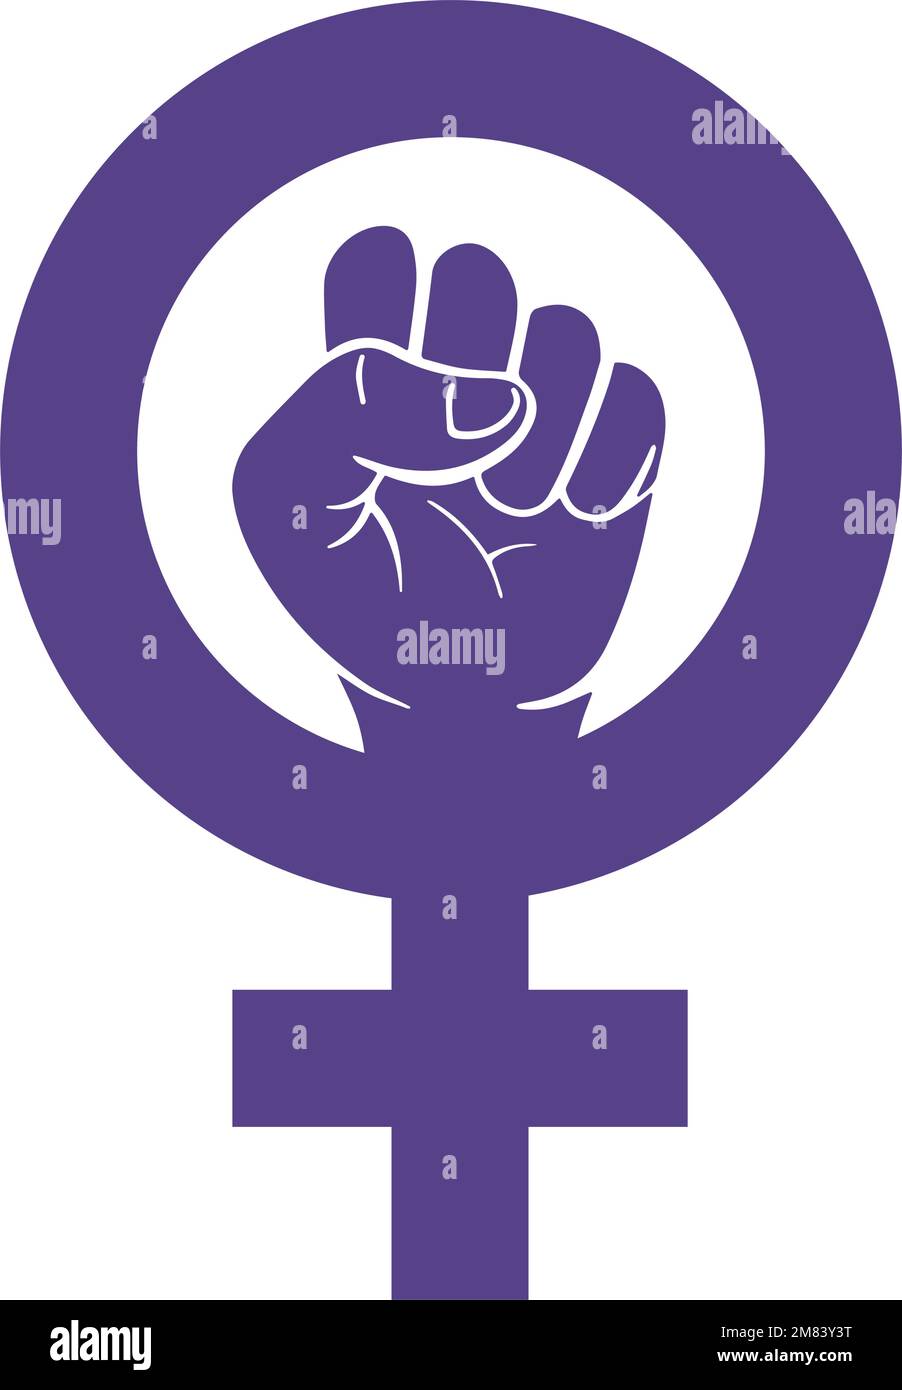 Logo del dia de la mujer fotografías e imágenes de alta resolución - Alamy